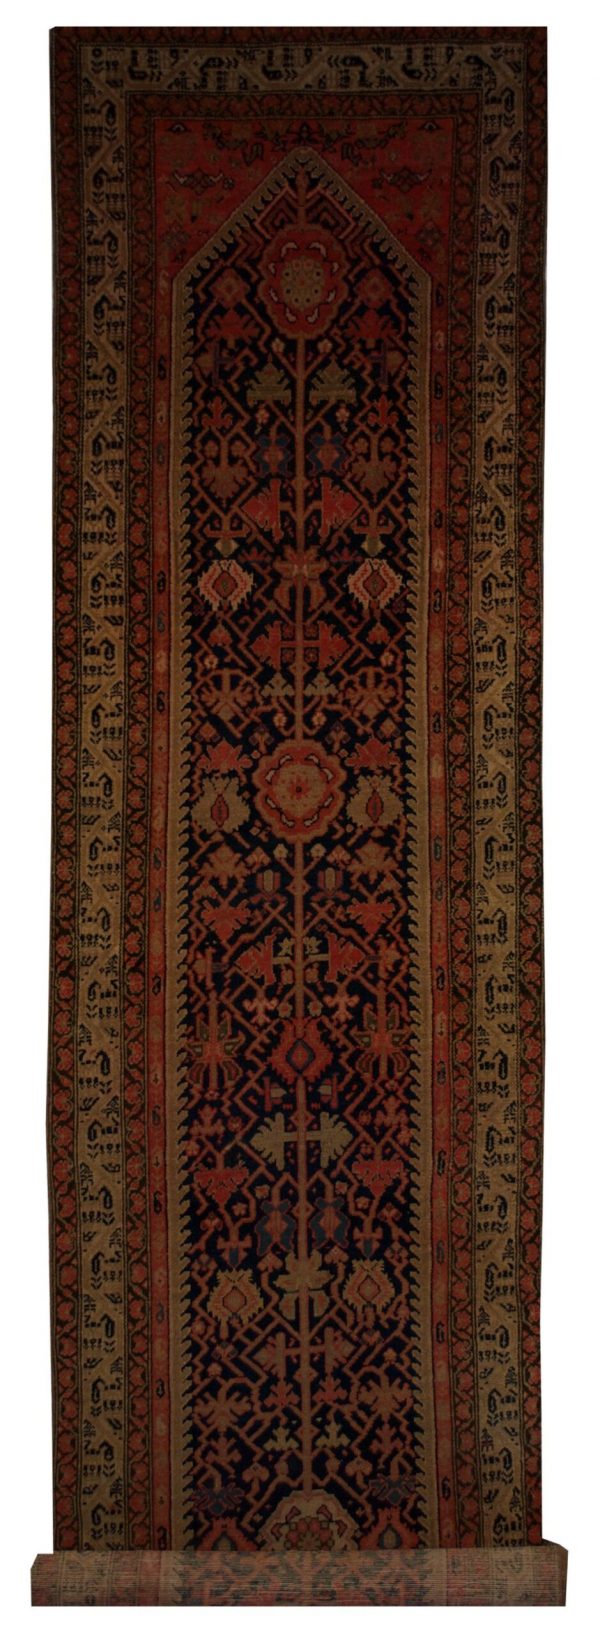 Antique Persian Malayer 3' 2" x 15' 7" - Shabahang Royal Carpet